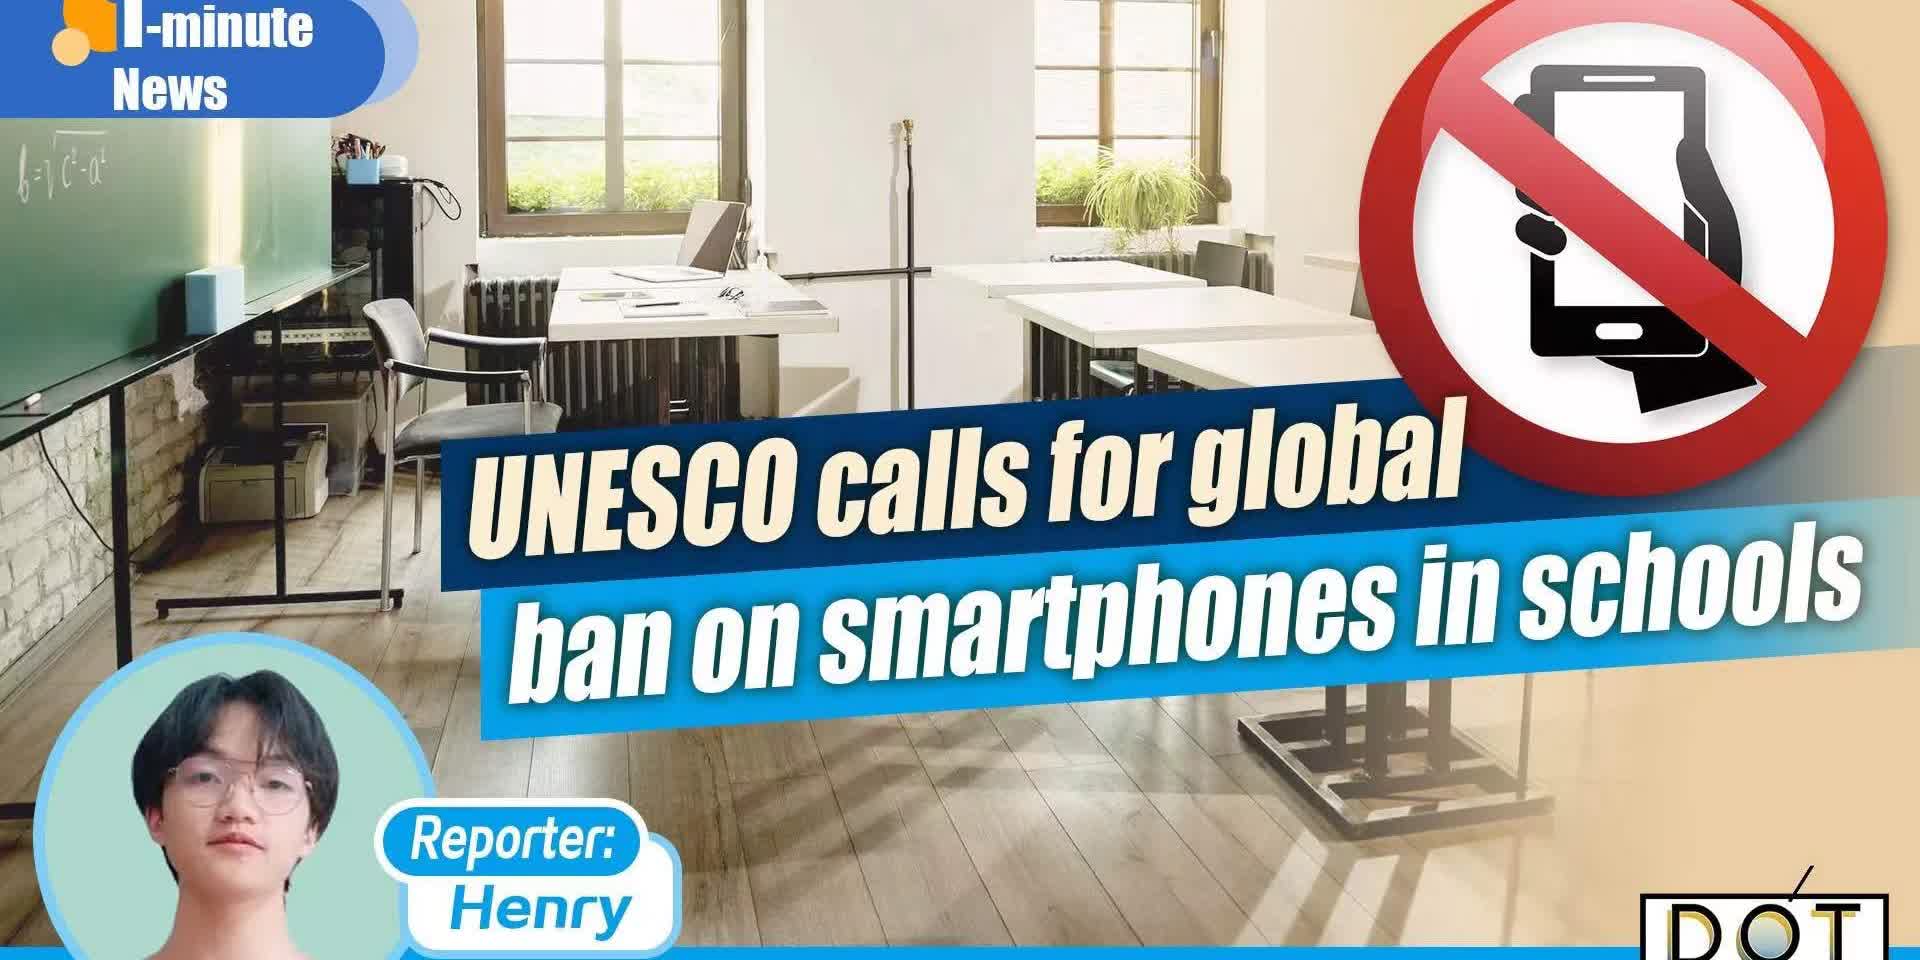 1-minute News | UNESCO calls for global ban on smartphones in schools